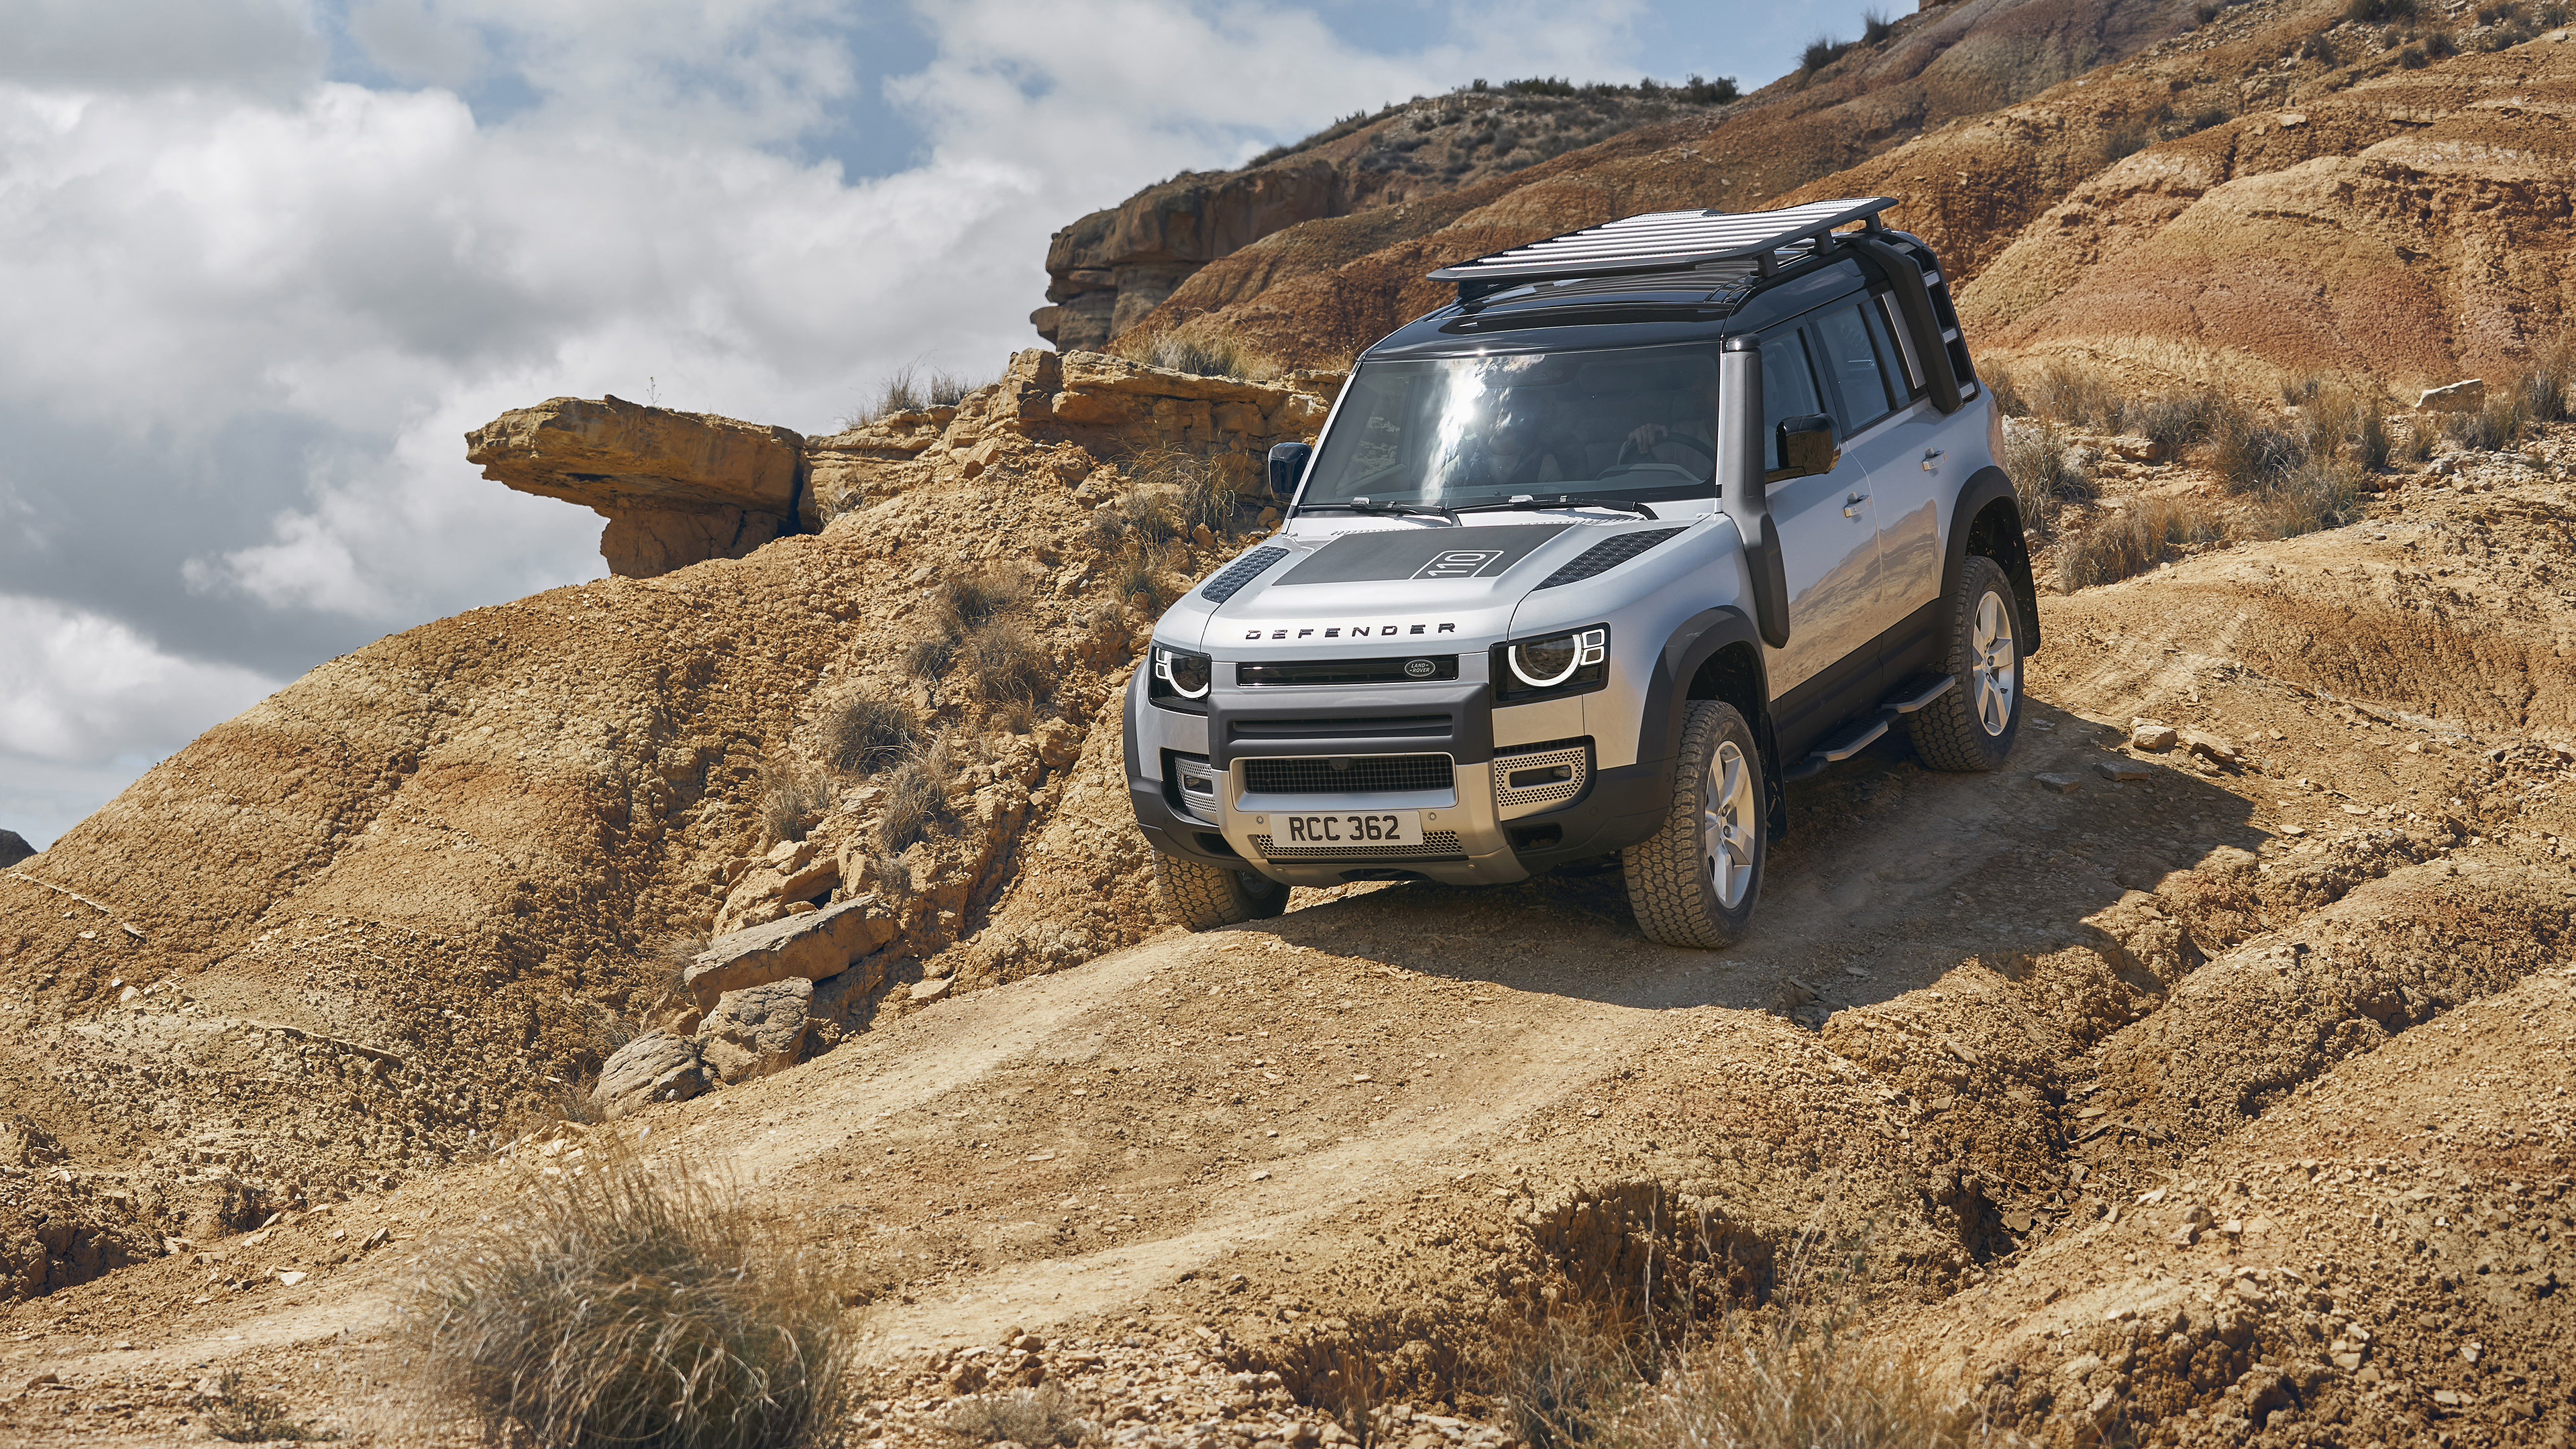 Land Rover Defender, Vehicle in desert, Off-road prowess, Remote landscapes, 3840x2160 4K Desktop